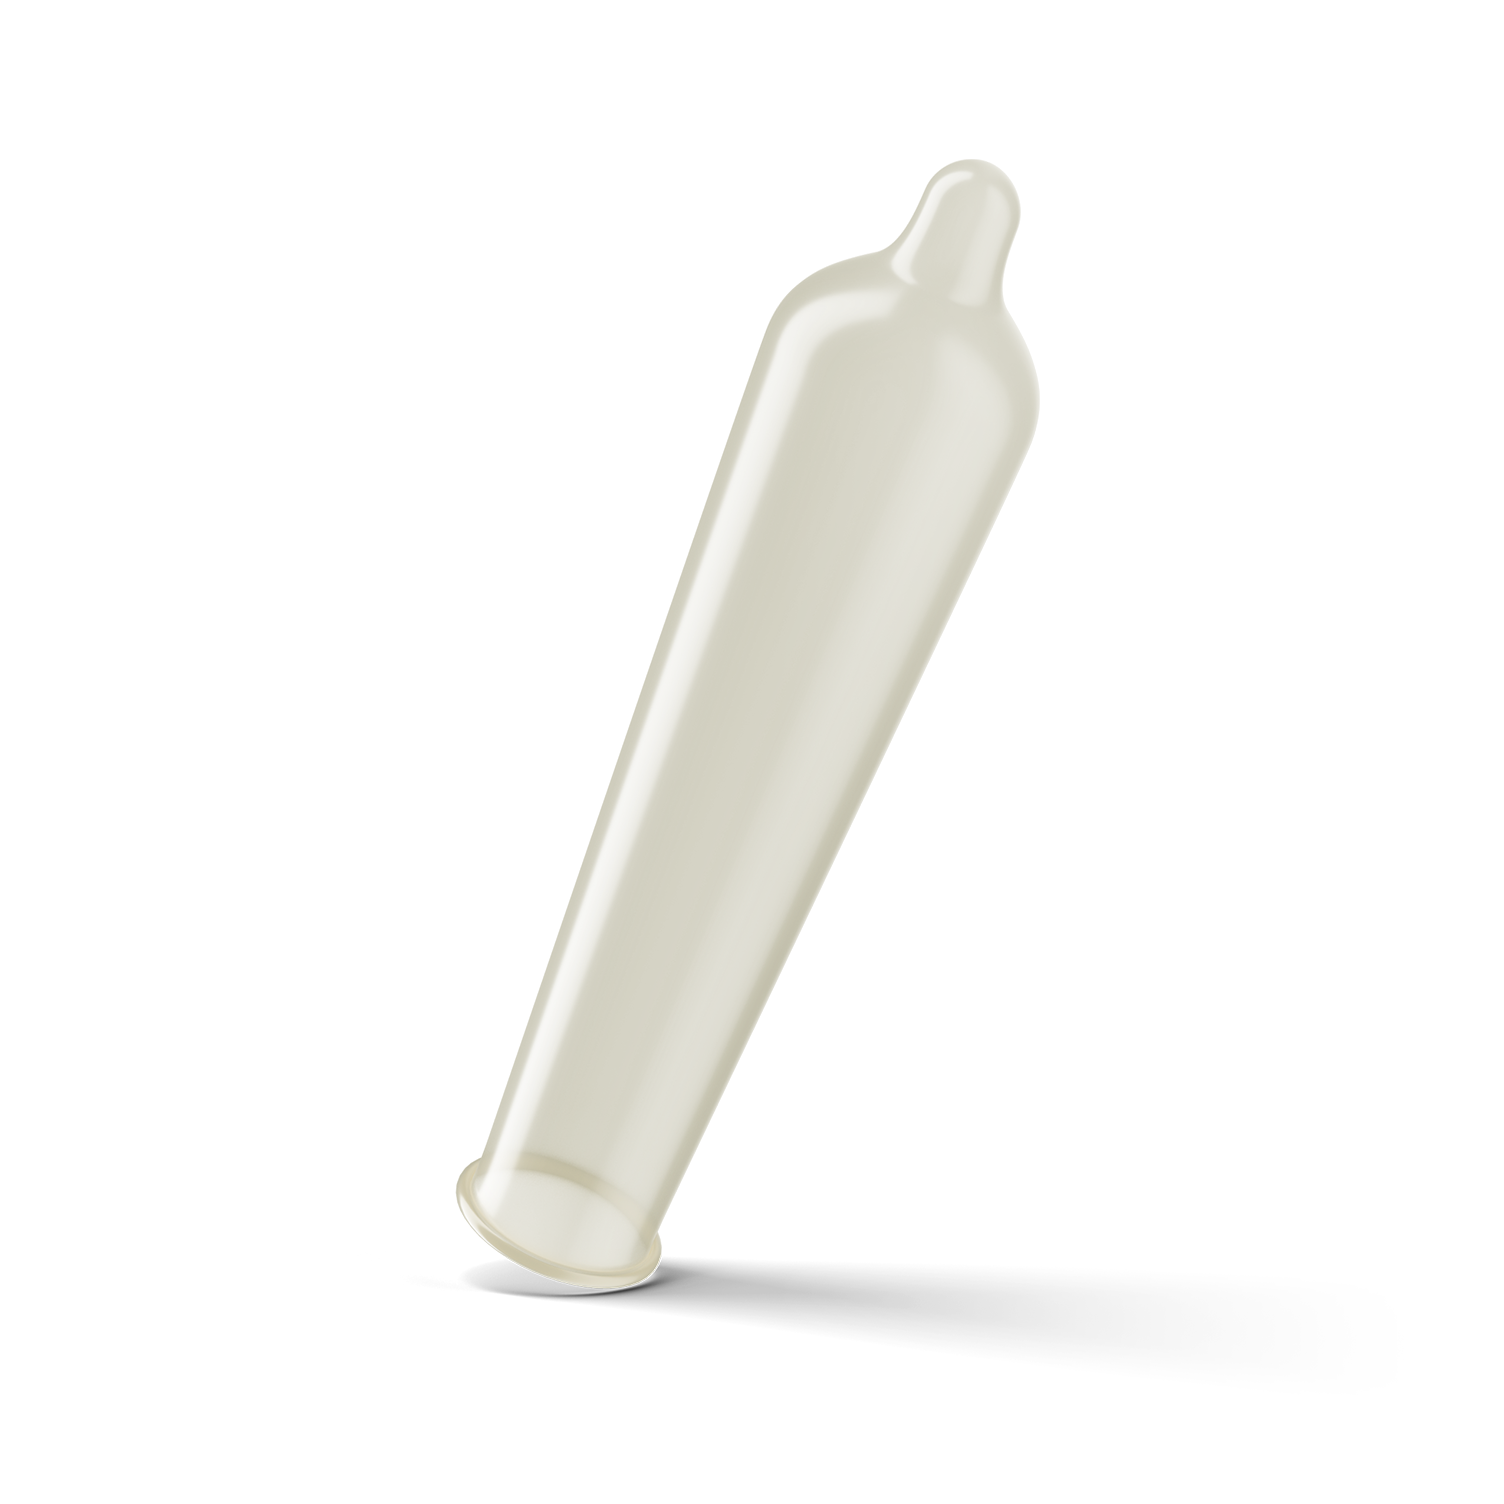 Trojan Ultra Fit Comfort Feel Condom straight shape.